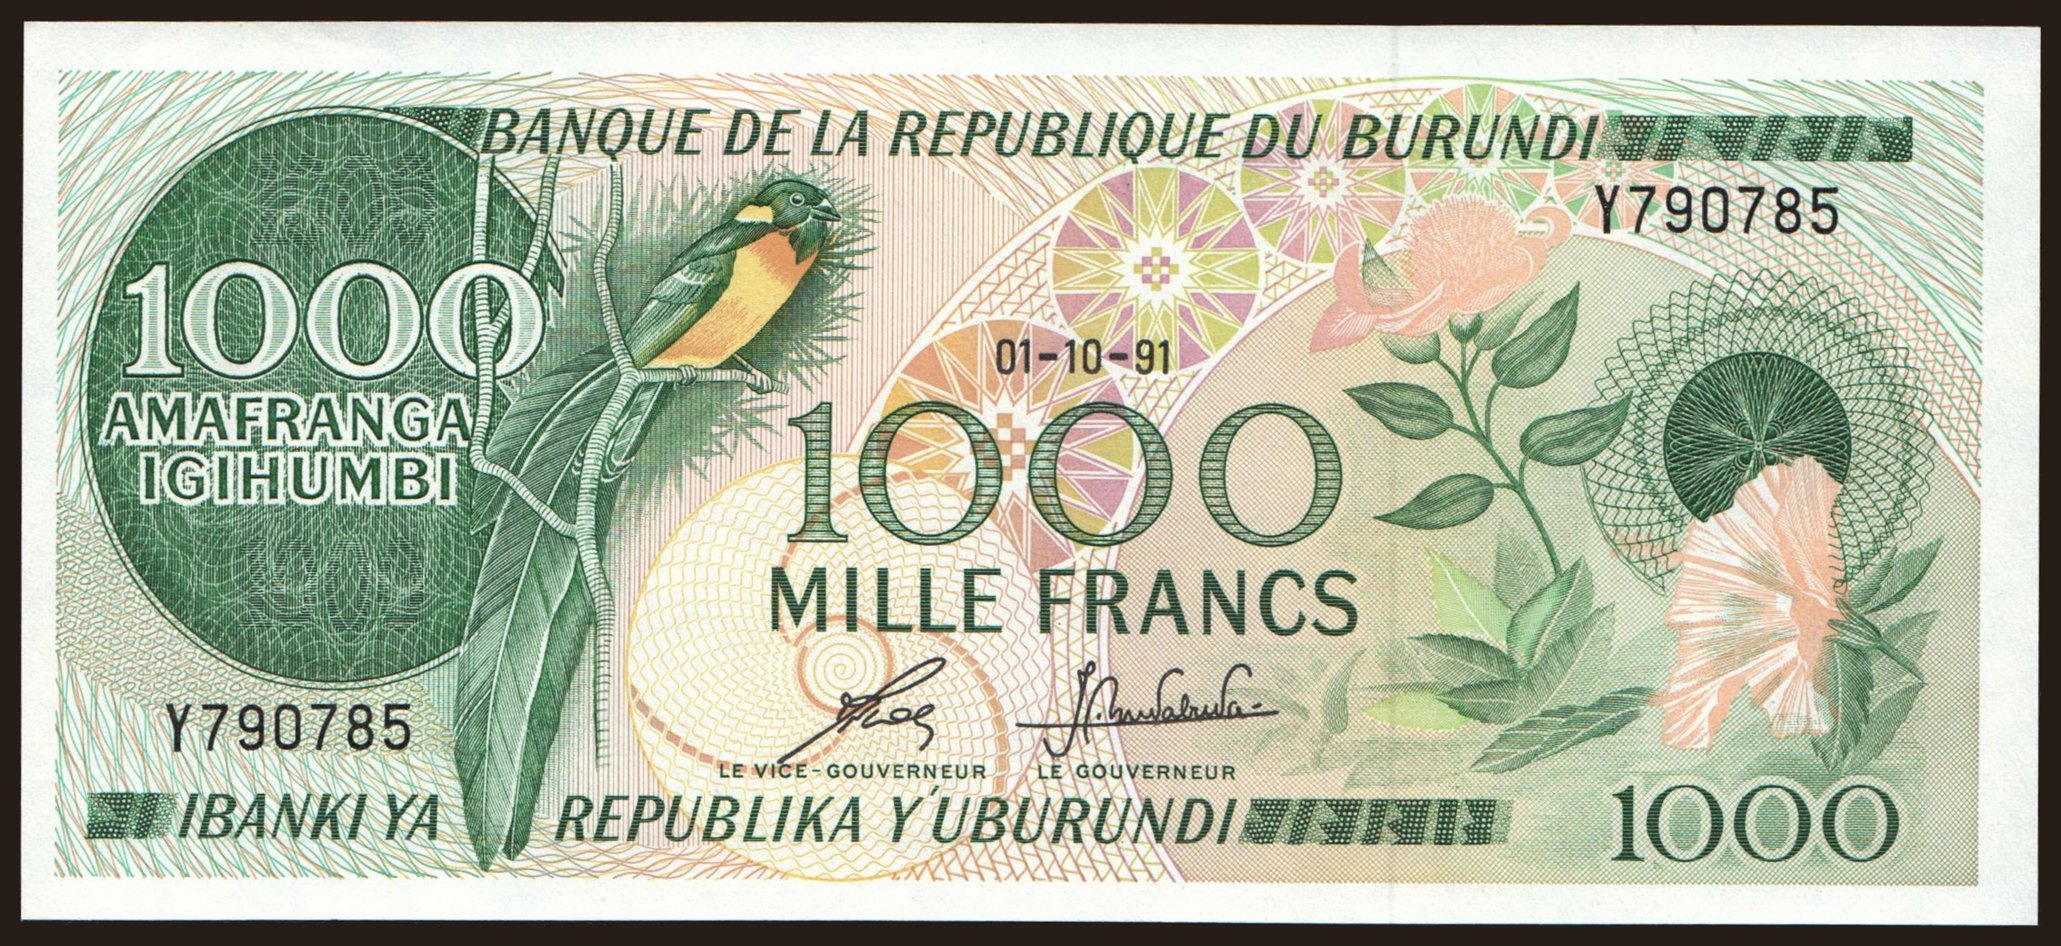 1000 francs, 1991